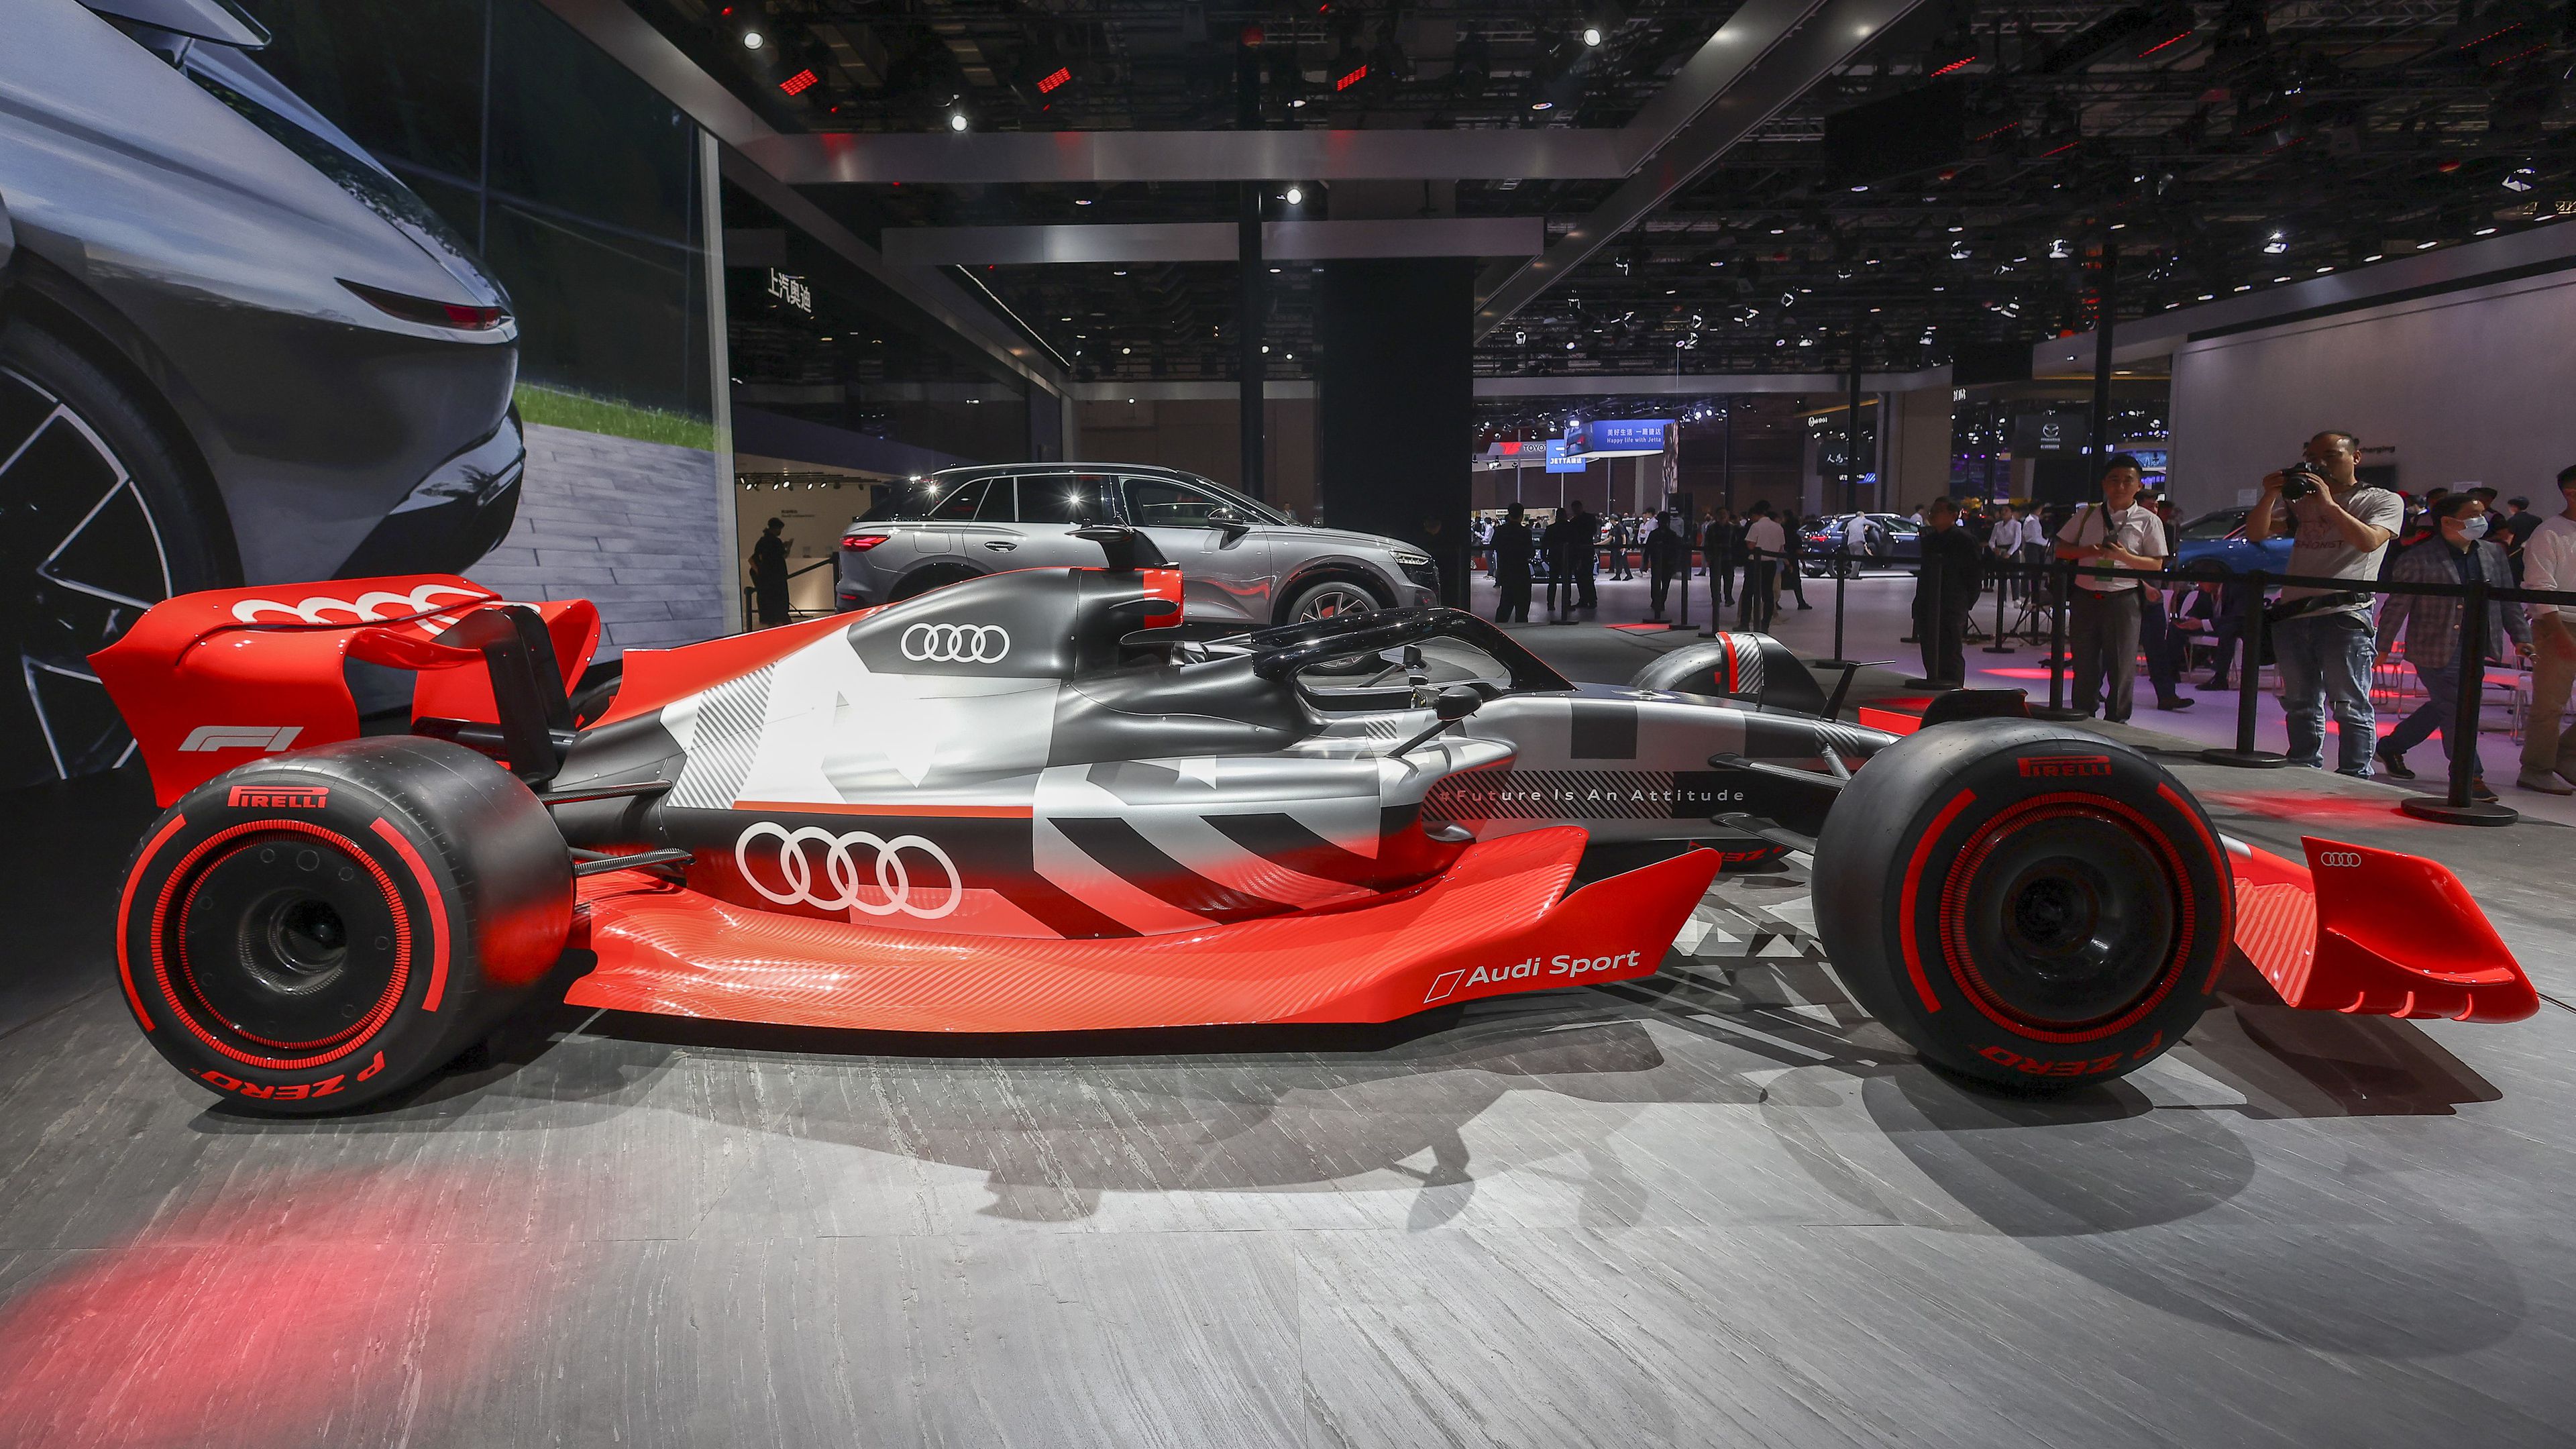 F1-hírek: az Audi megállapodott a Sauber teljes átvételéről